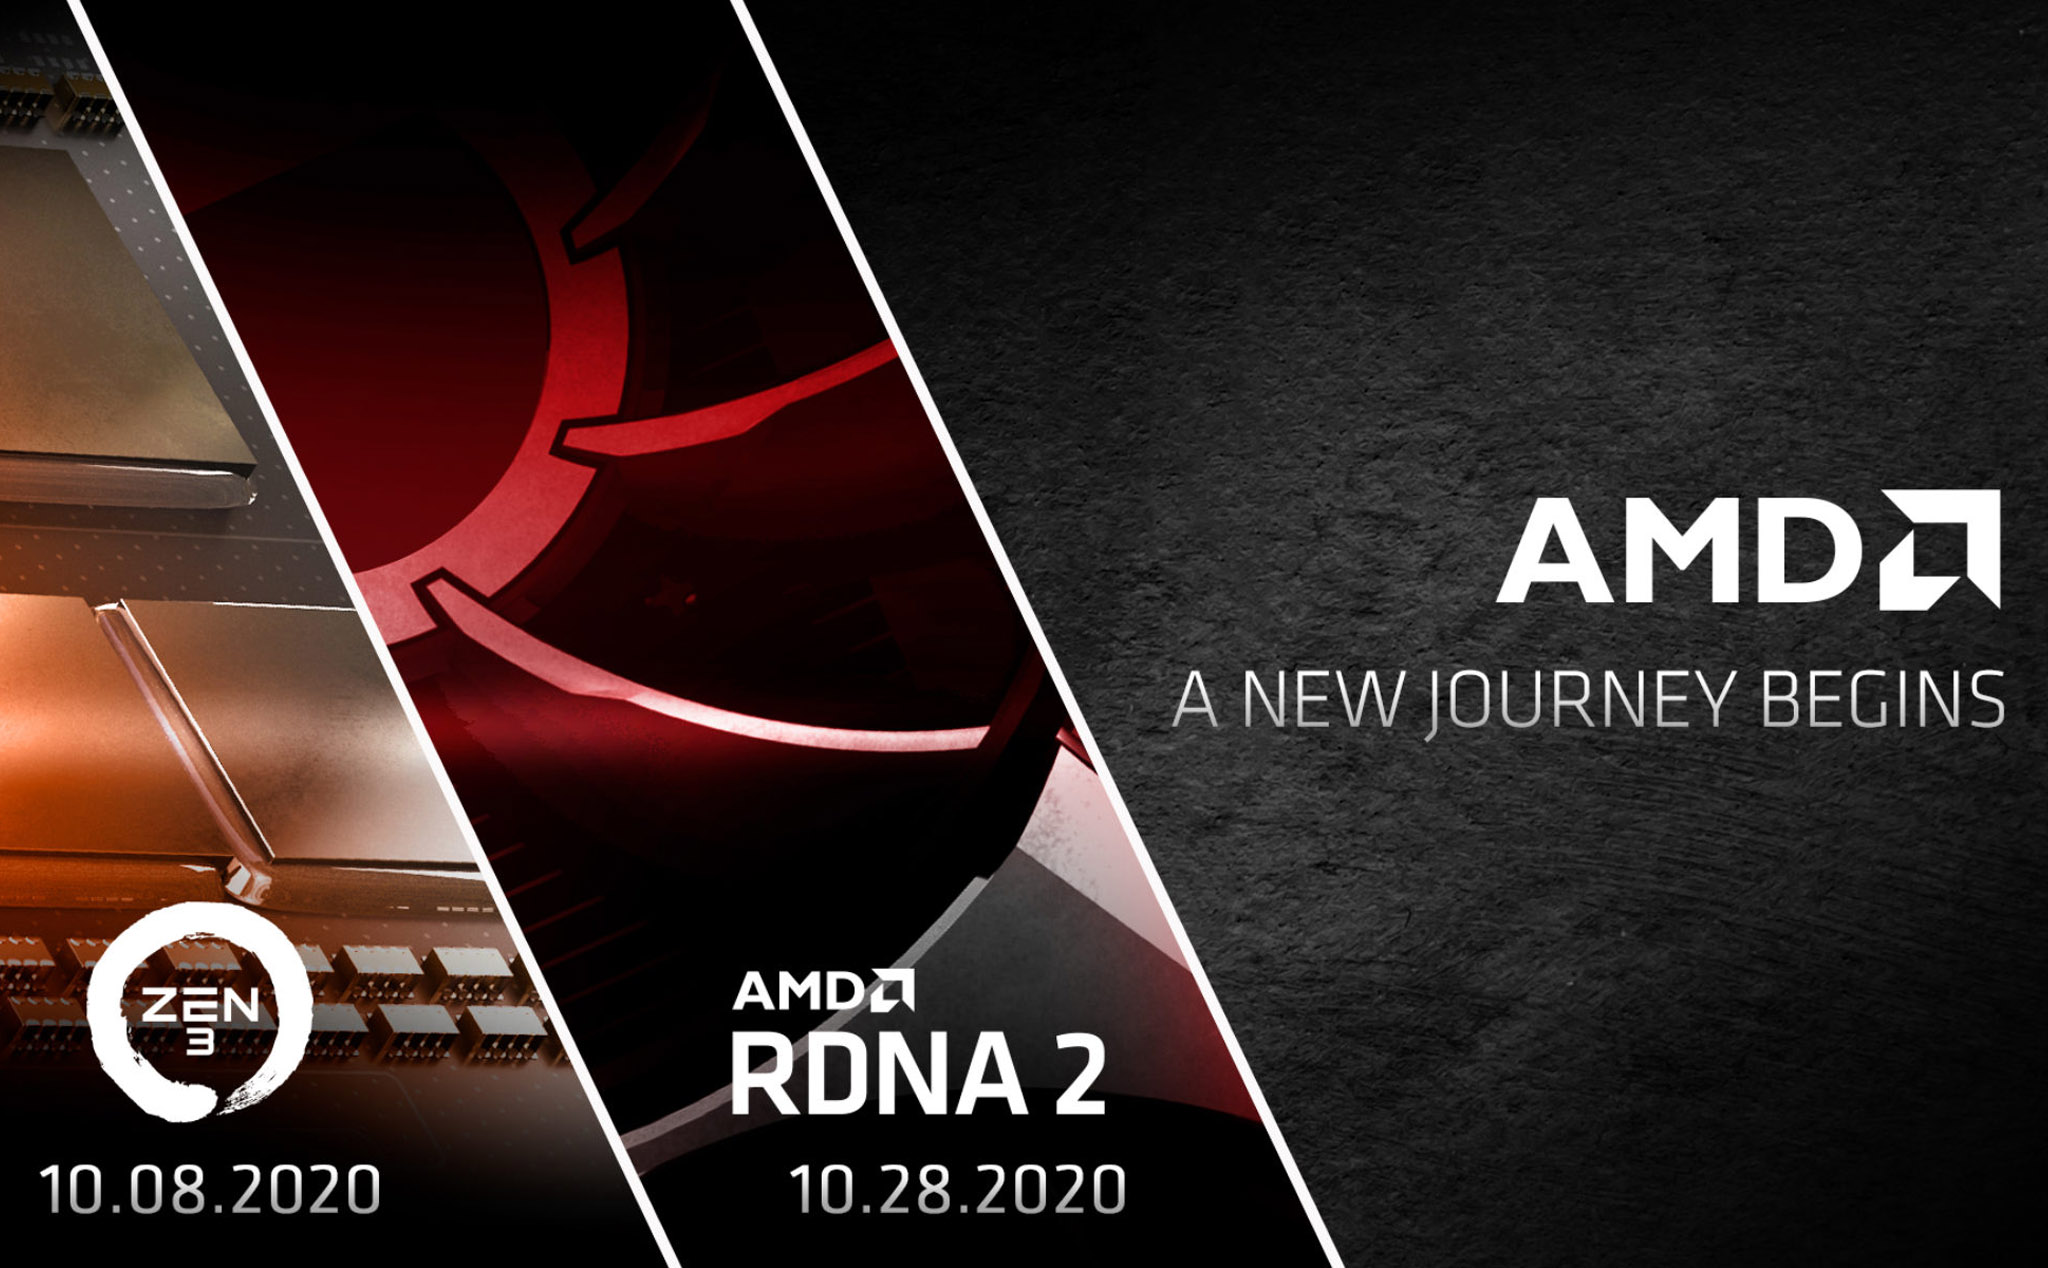 AMD chính thức: Ra mắt CPU Zen 3 ngày 8/10, card đồ họa RDNA 2 ngày 28/10